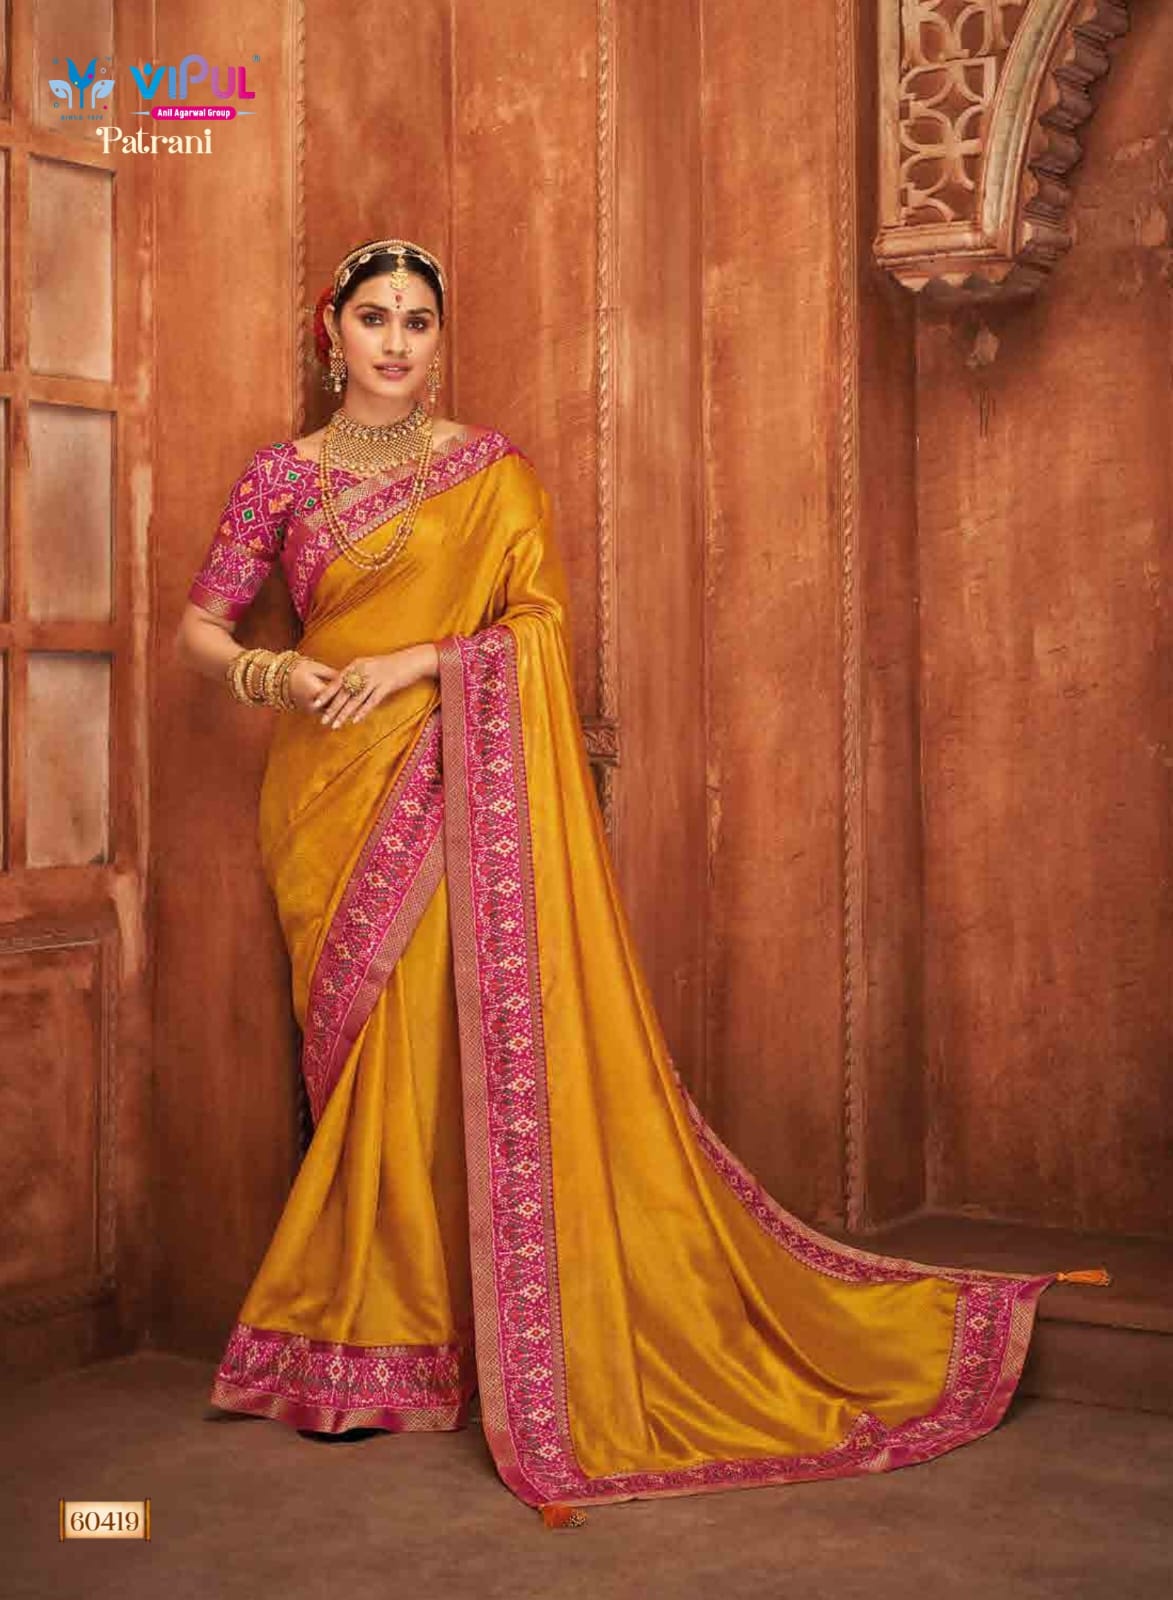 Rewaa Banarasi Vol 4 Festive Designer Patola Silk Saree Collection | Silk  saree blouse designs, Saree designs, Party wear sarees